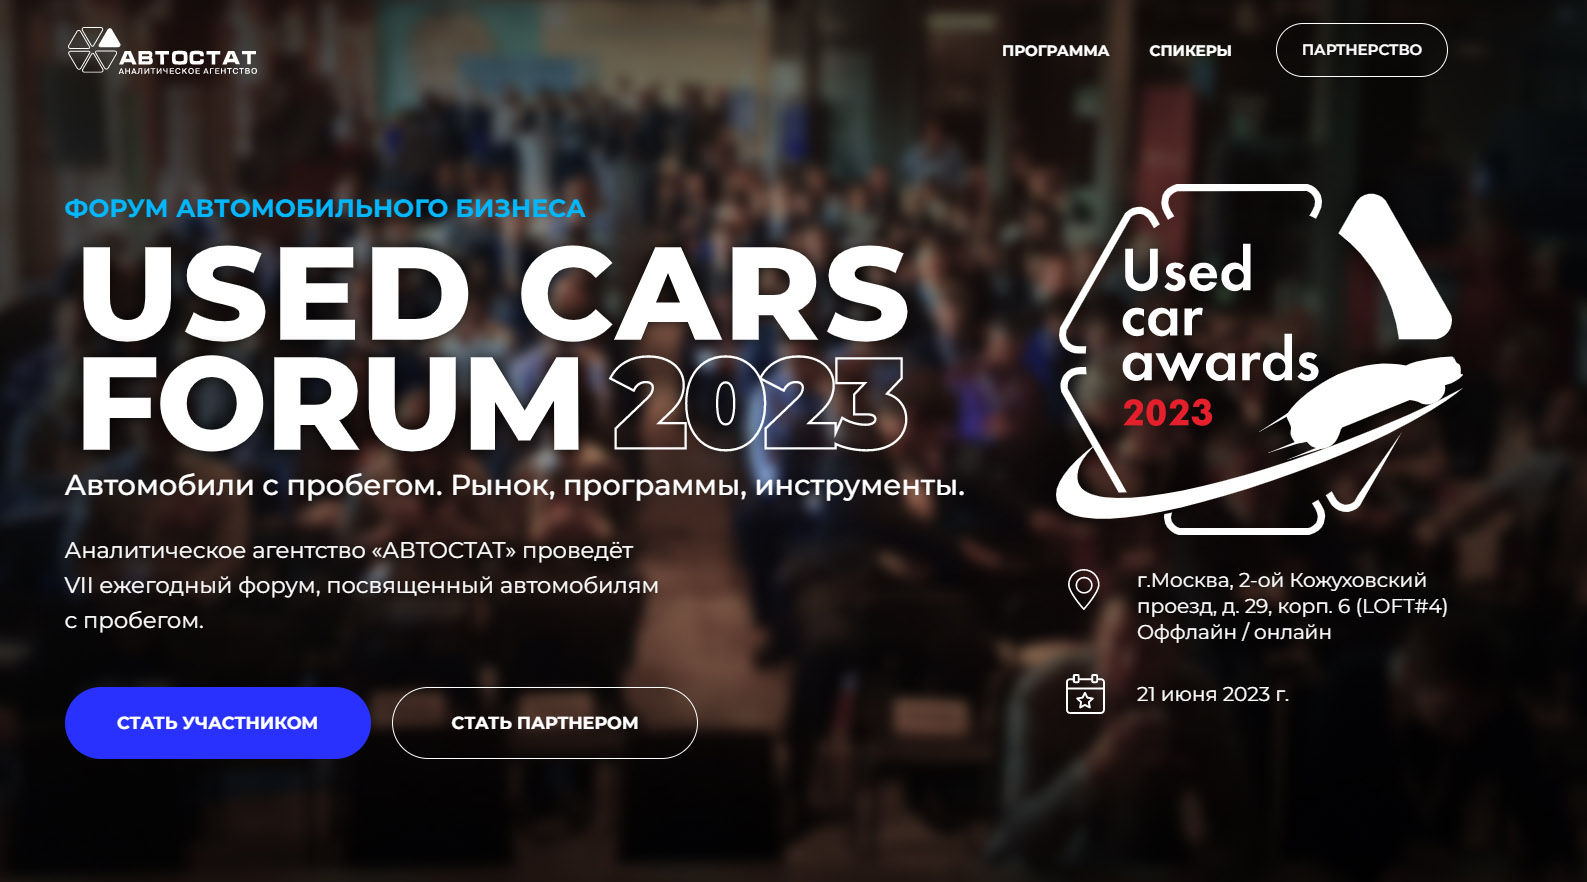 Конференция USED CARS FORUM - 2023 пройдет 21 июня в Москве